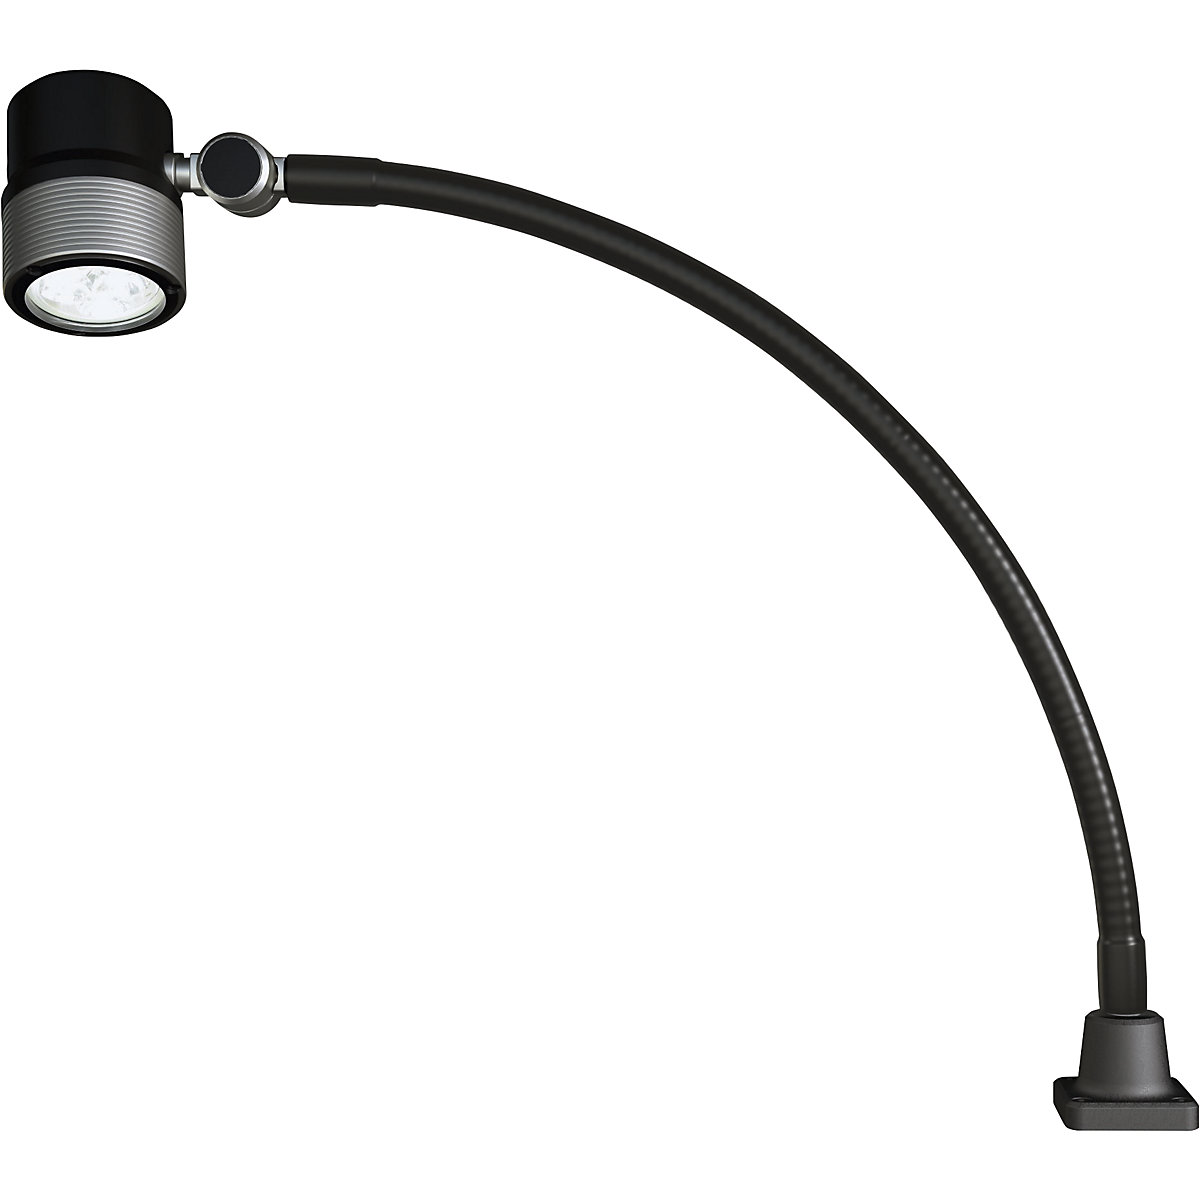 Lampă LED cu braț flexibil pentru utilaje – Waldmann